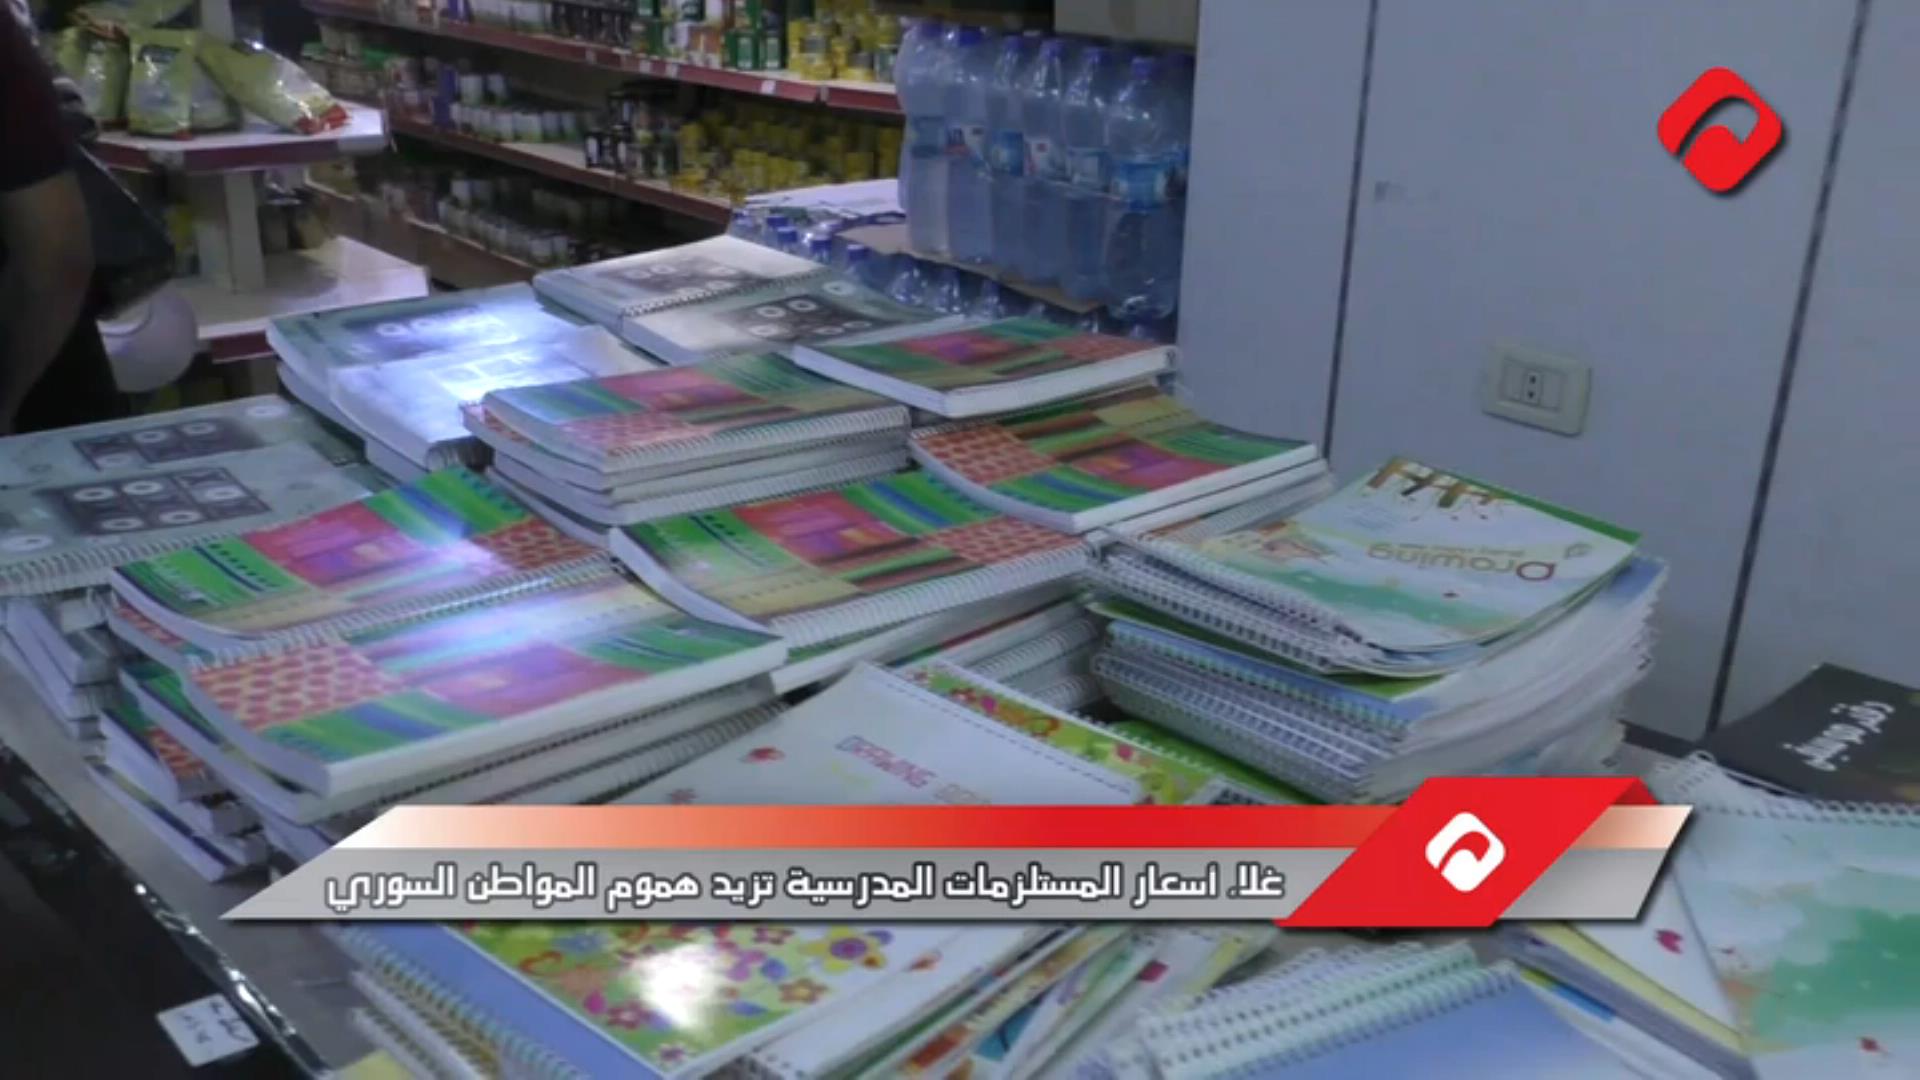 غلاء أسعار المستلزمات المدرسية يزيد هموم المواطن السوري (فيديو)